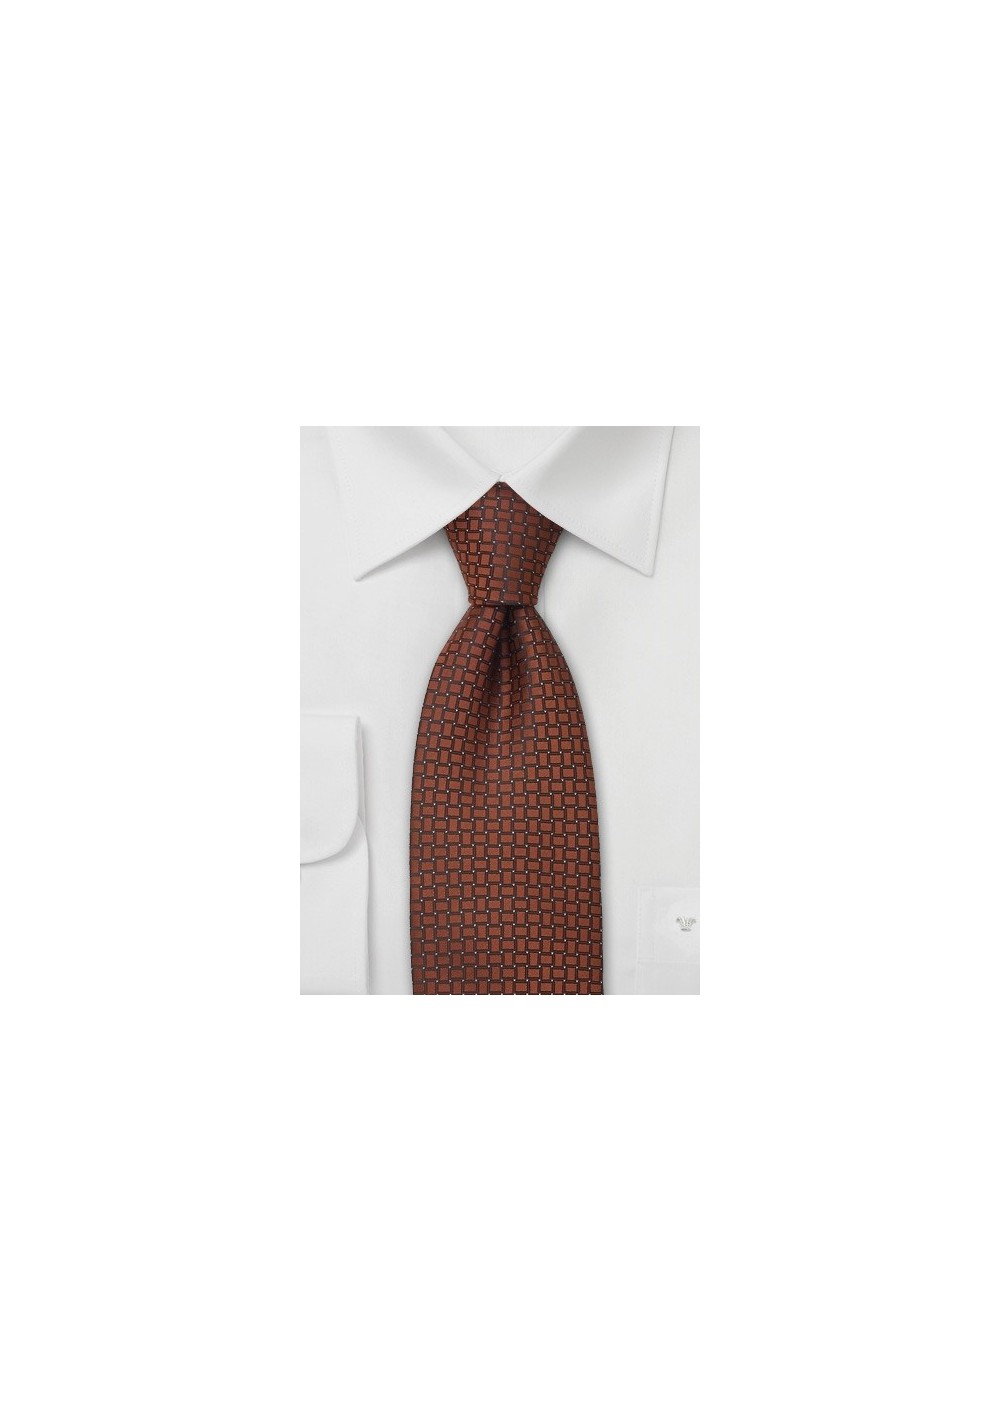 Neckties - Copper-brown tie